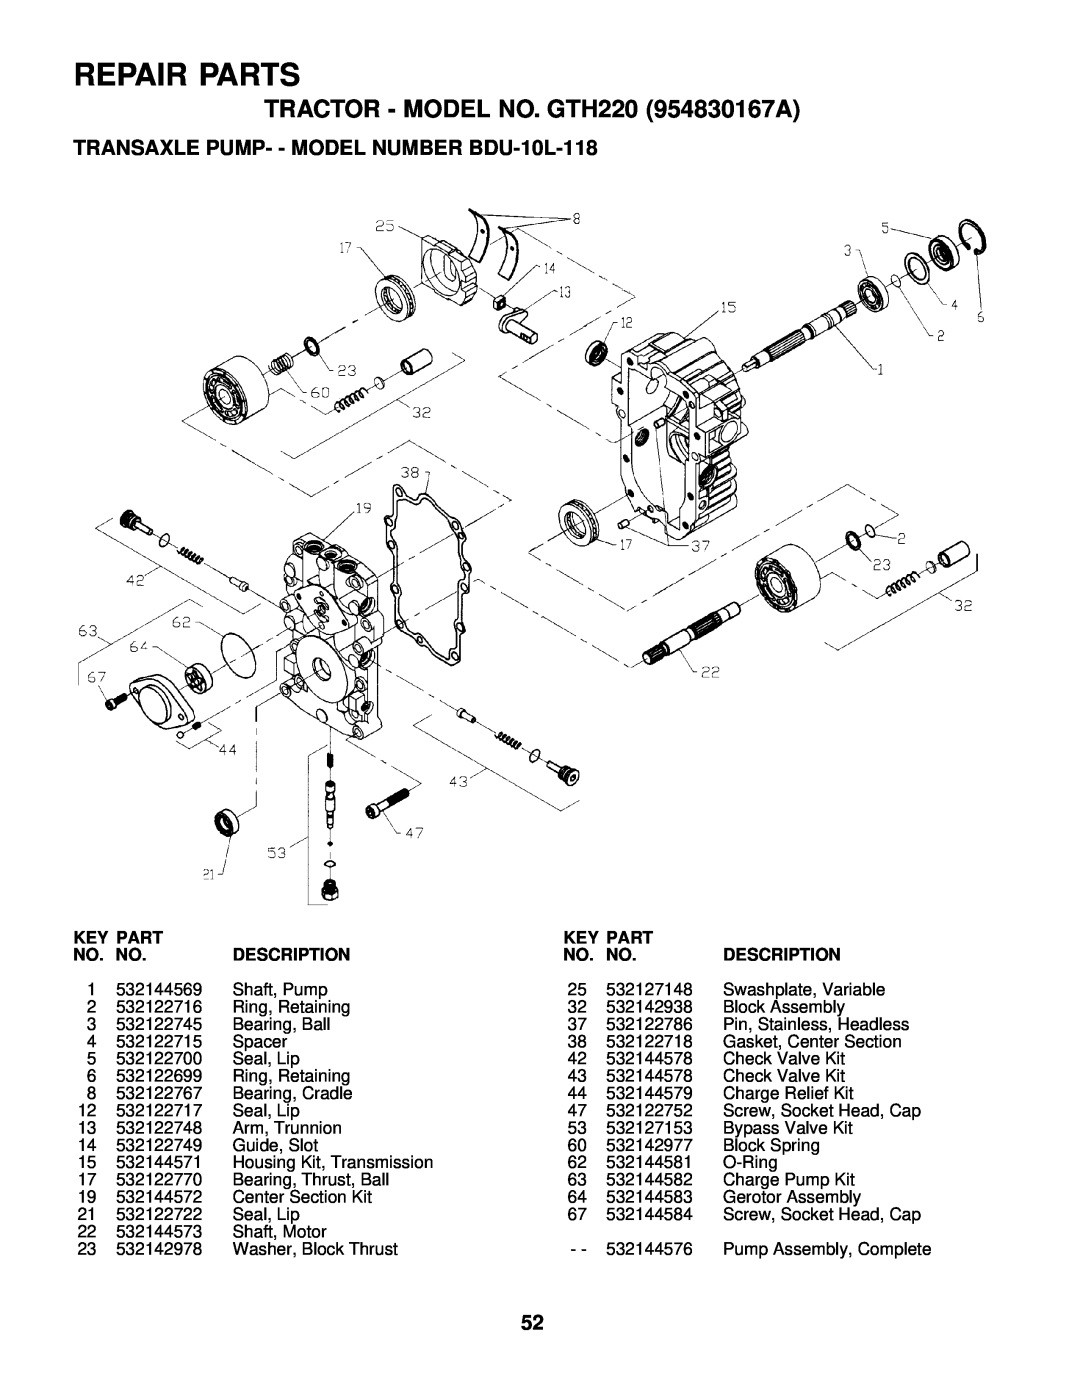 Husqvarna TRANSAXLE PUMP- - MODEL NUMBER BDU-10L-118, Repair Parts, TRACTOR - MODEL NO. GTH220 954830167A, Description 